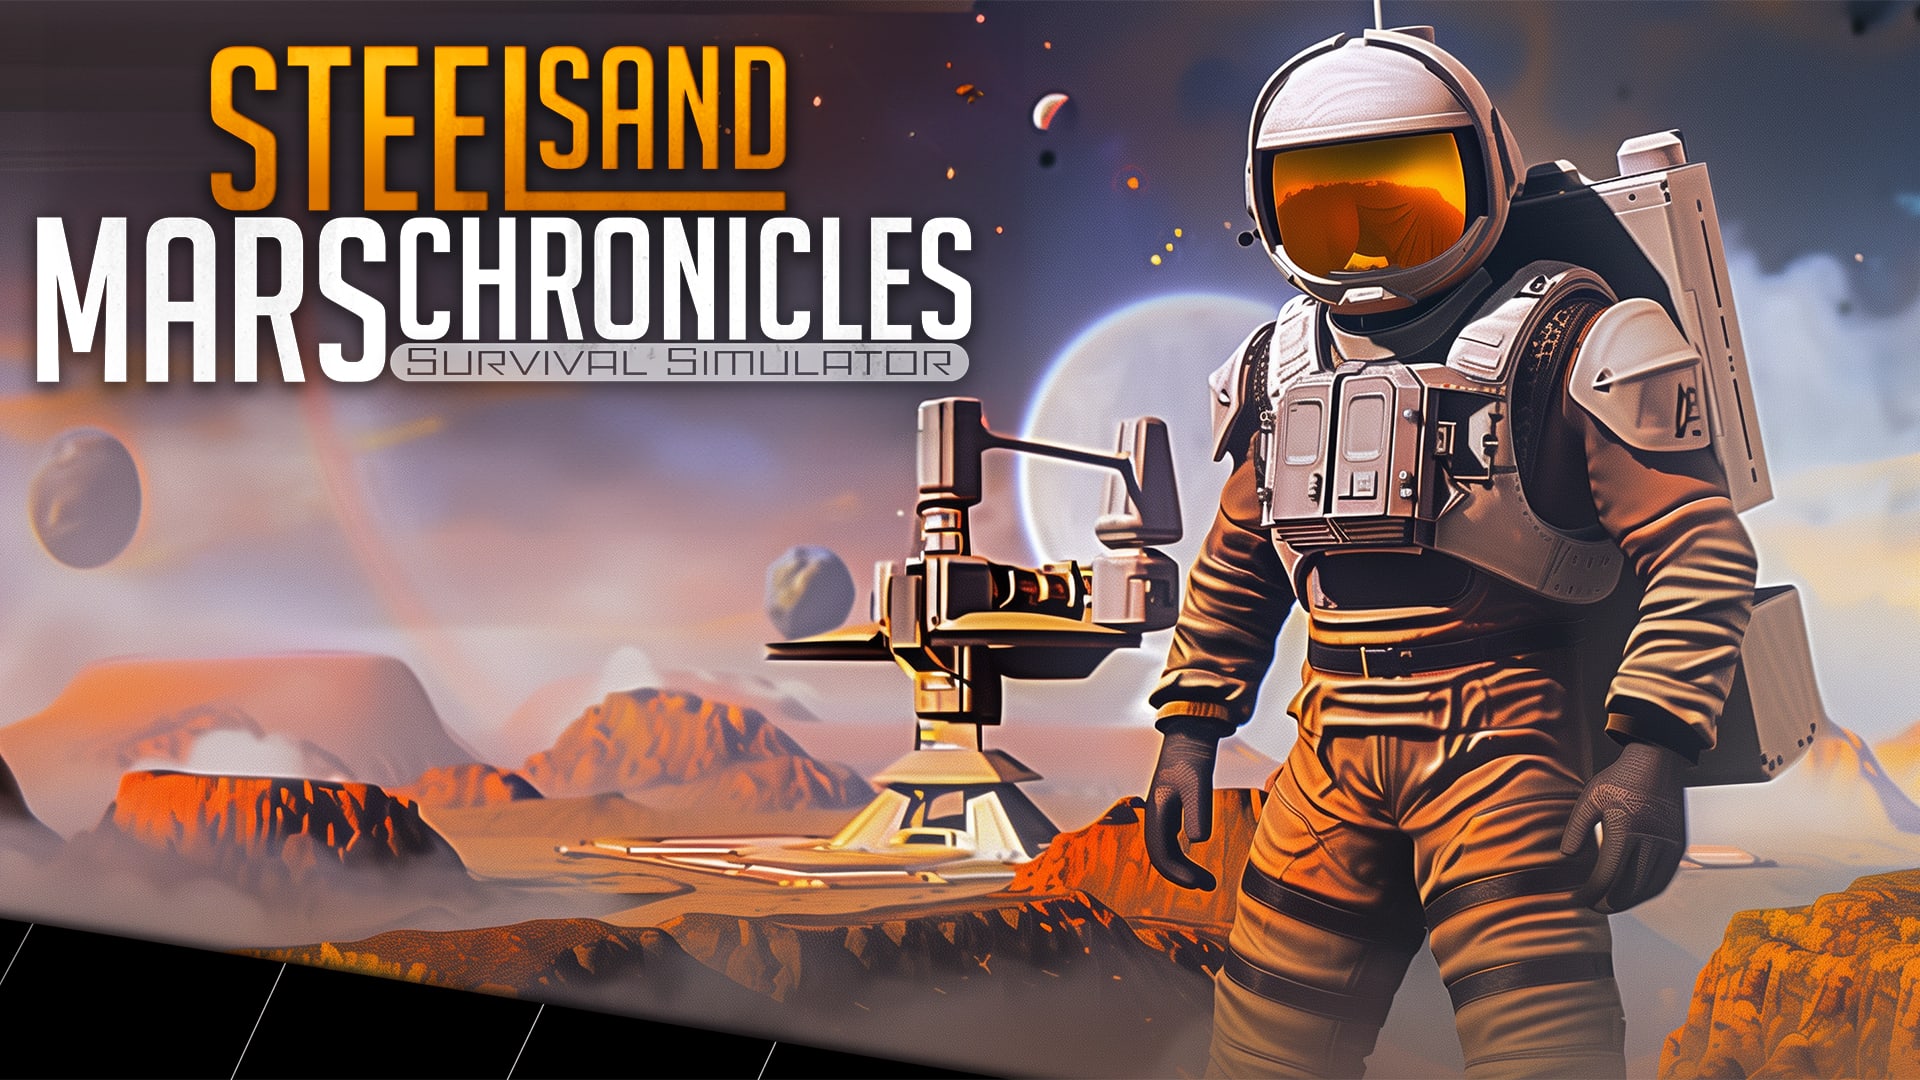 Steel Sand Mars Chronicles - Survival Simulator 1